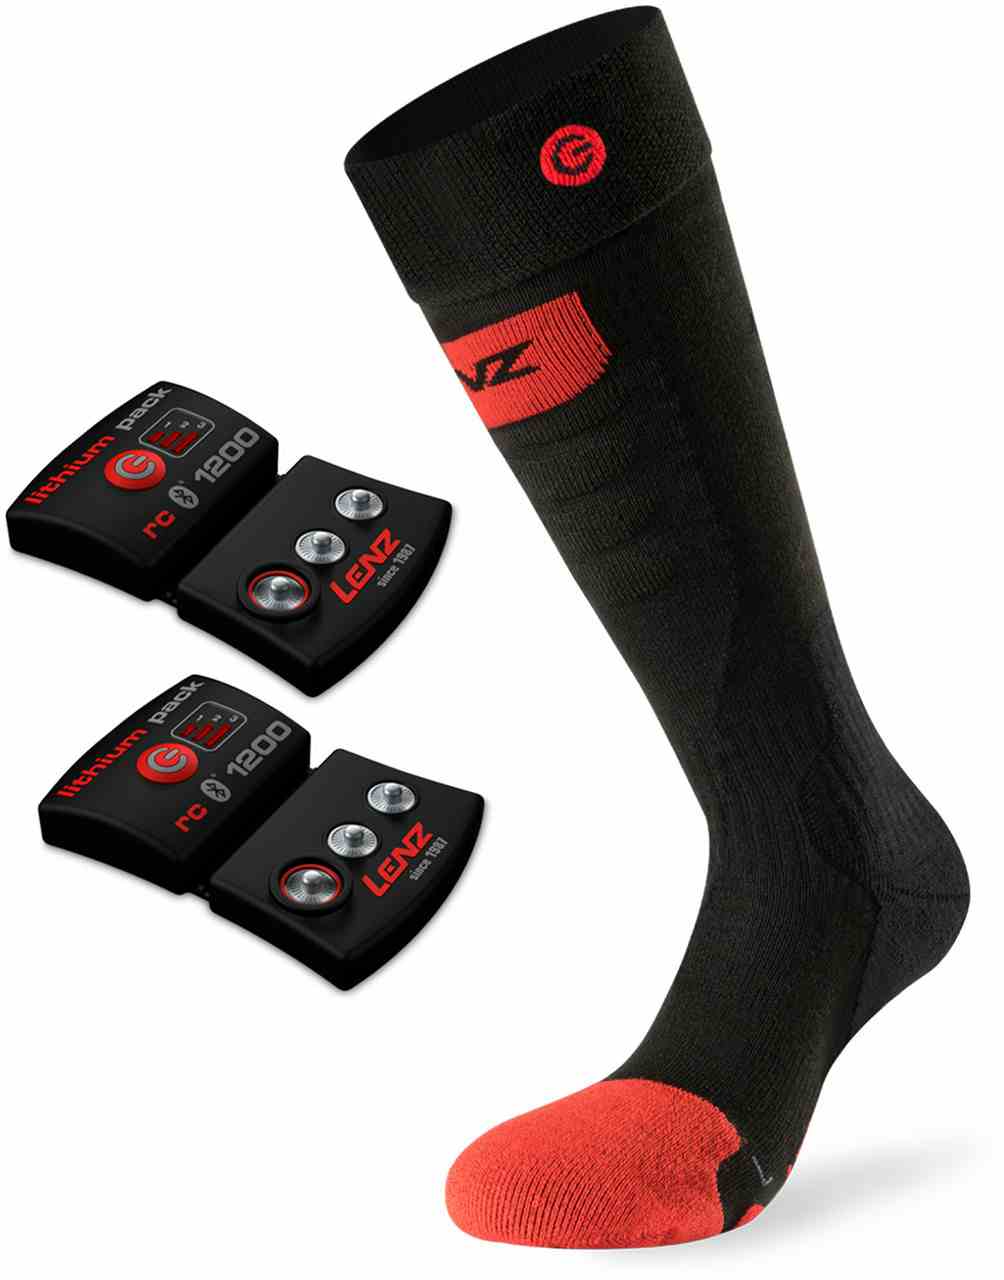 Chaussettes Heat Sock 5.0 Slimfit et pile rcB 1200 Noir